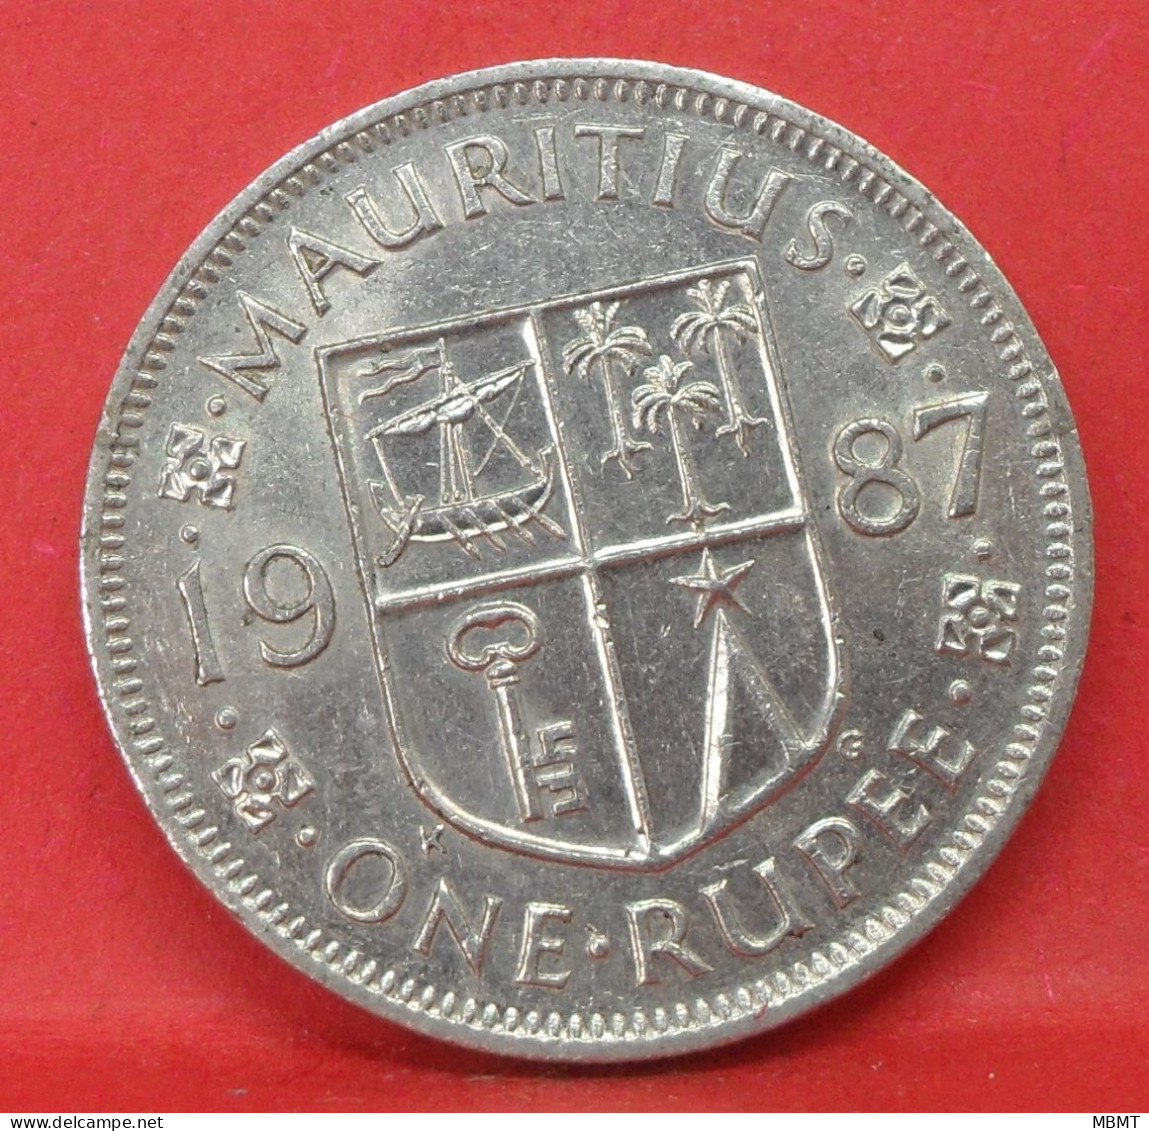 1 Rupée 1987 - TTB - Pièce De Monnaie Ile Maurice - Article N°6163 - Mauritius